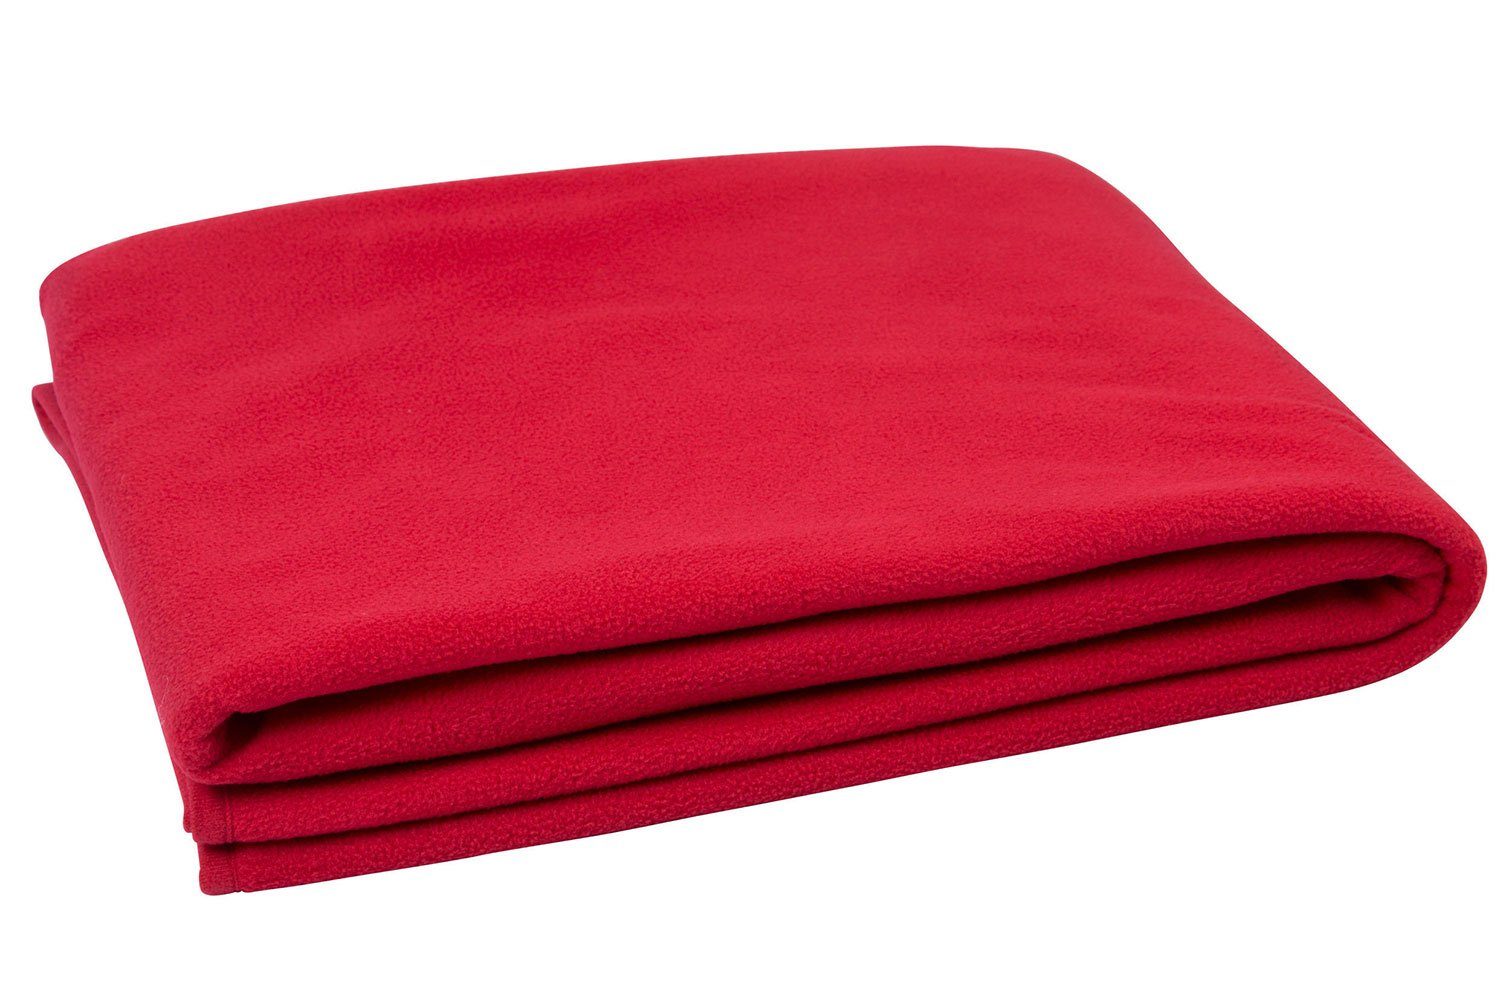 Wohndecke, ZOLLNER, hochwertiges Einfassband, 130 x 170 cm, 100% Polyester, in vielen modernen Farben verfügbar rot